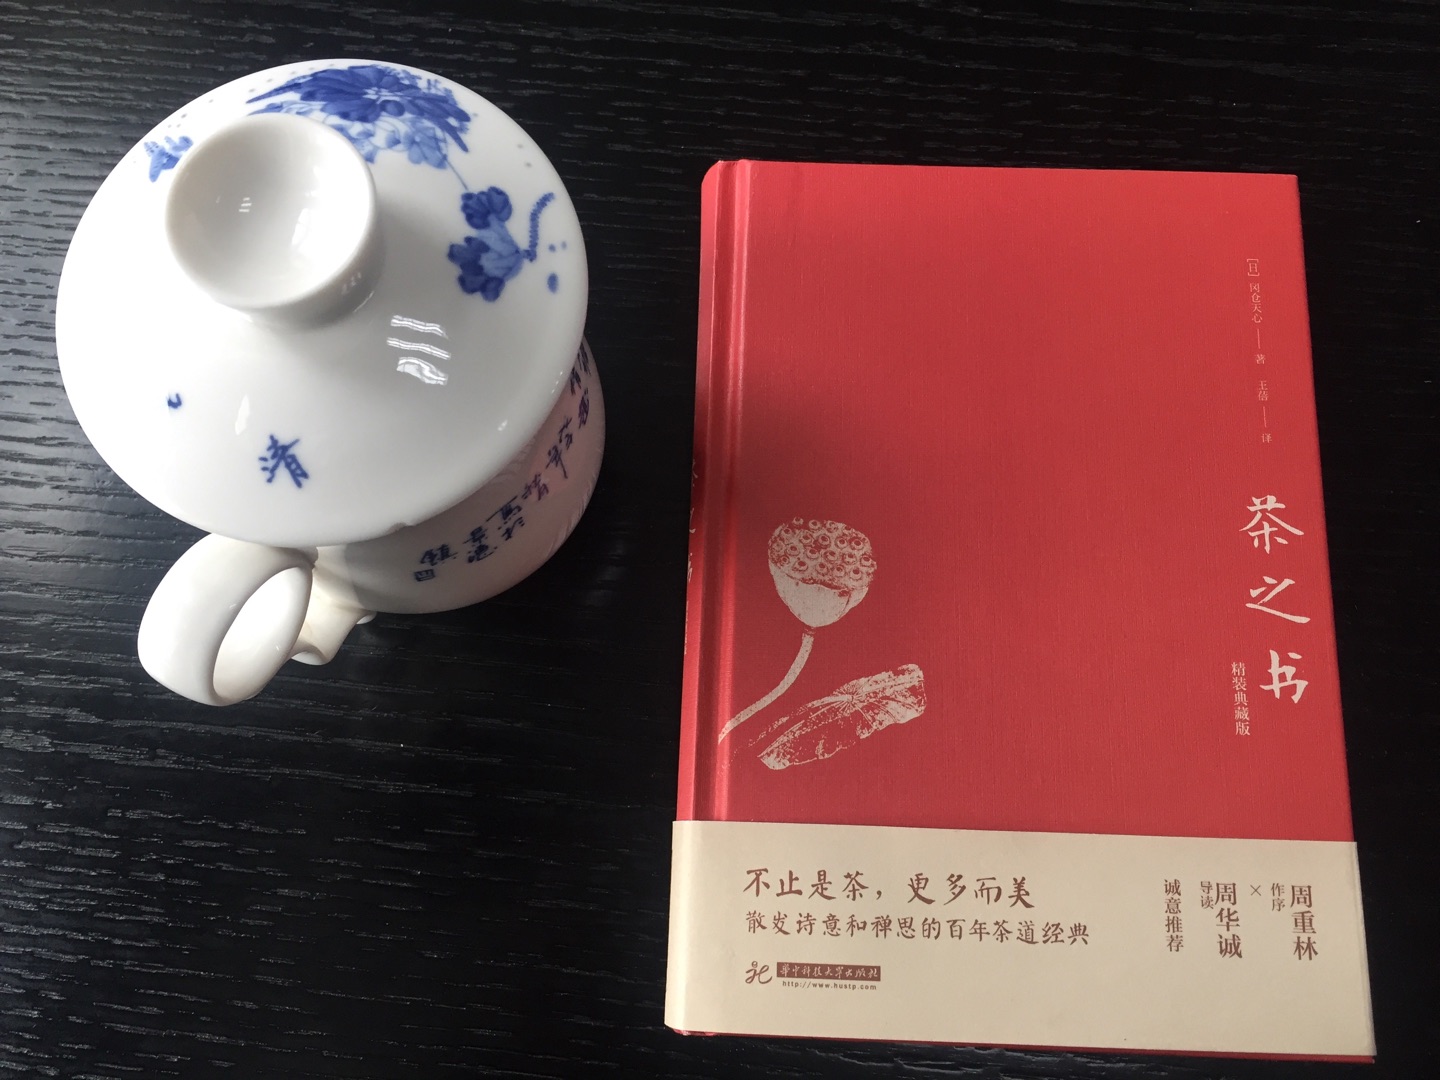 中国自古对吃茶就有讲究，从煮茶，煎茶，点茶，到泡茶，可谓源远流长。?虽茶事起于中国，但日本的茶道却超越了中国。武士道是日本人死的艺术，而茶道则是日本人生的艺术。爱吃茶的你，阅读日本冈仓天心《茶之书》，让你在品茶之外，得到更多的是道与美。??